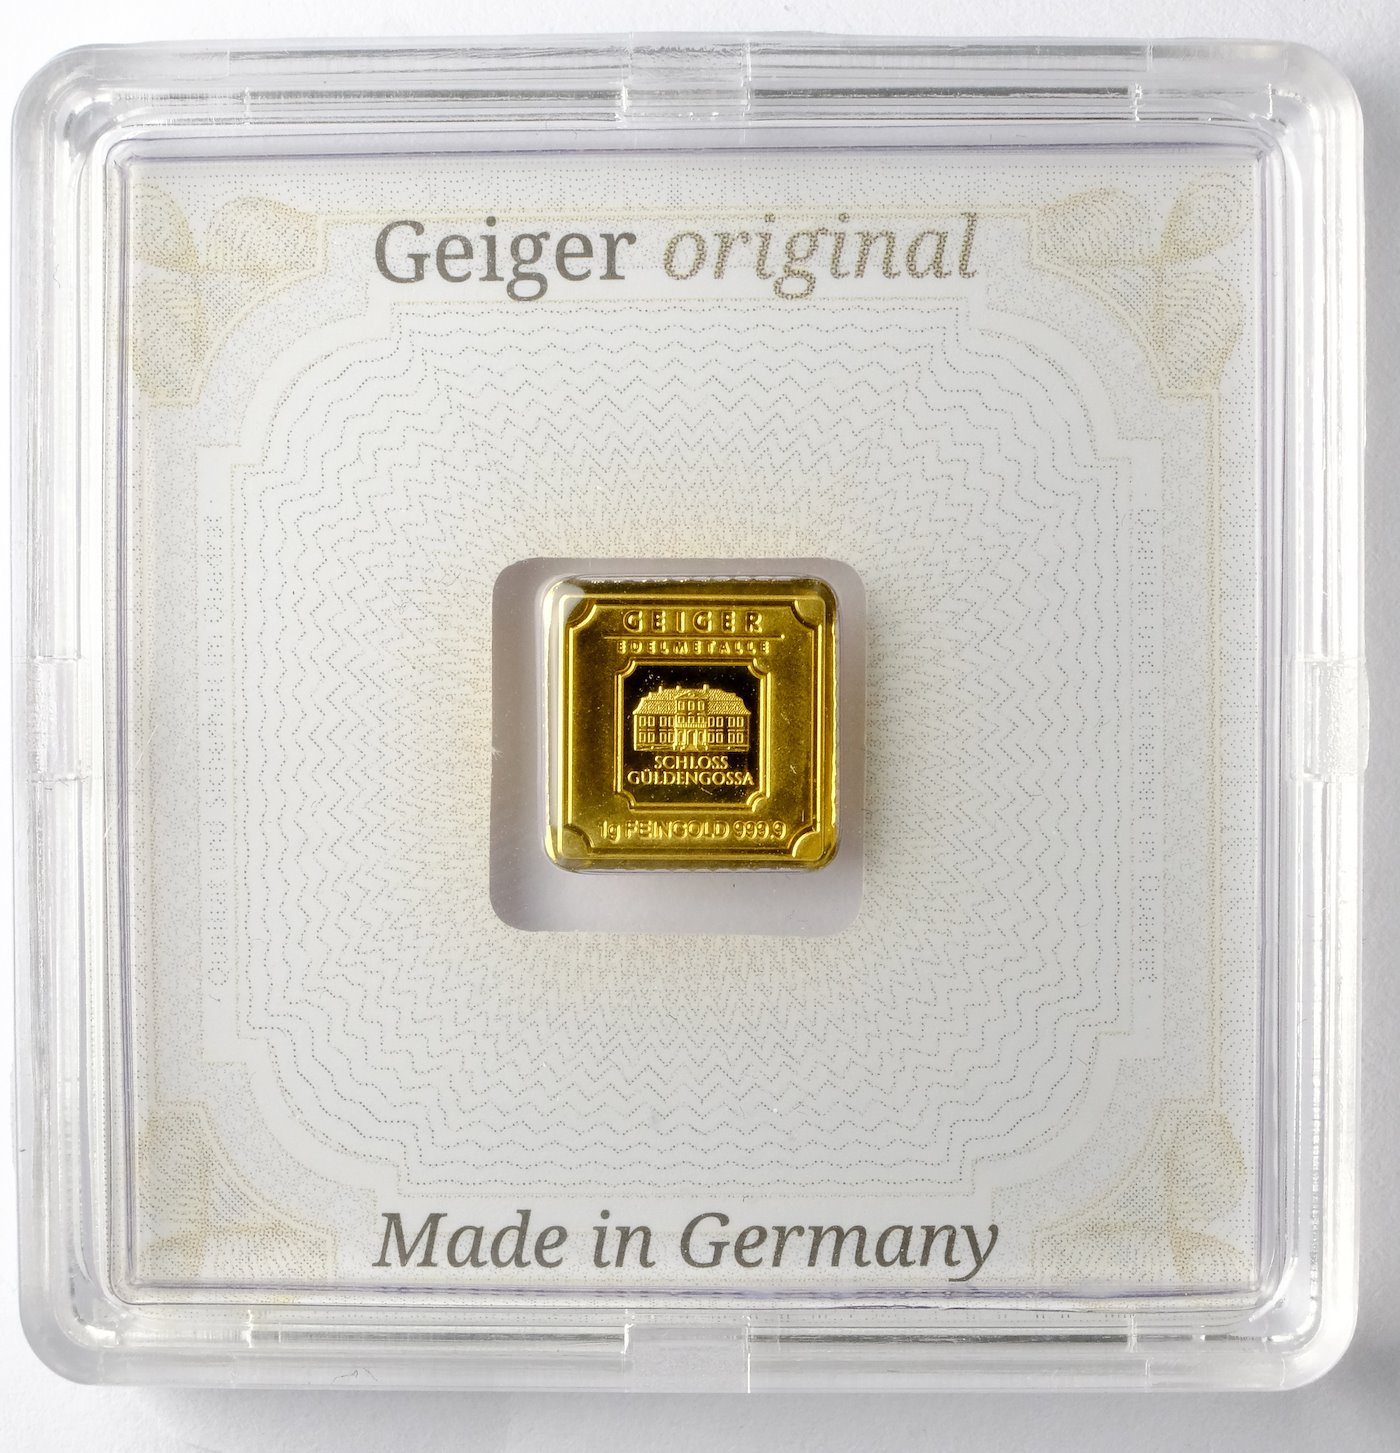 .. - Zlatý ražený ingot 1 g zámek Guldengossa od švýcarské společnosti Geiger, zlato 999,9/1000.